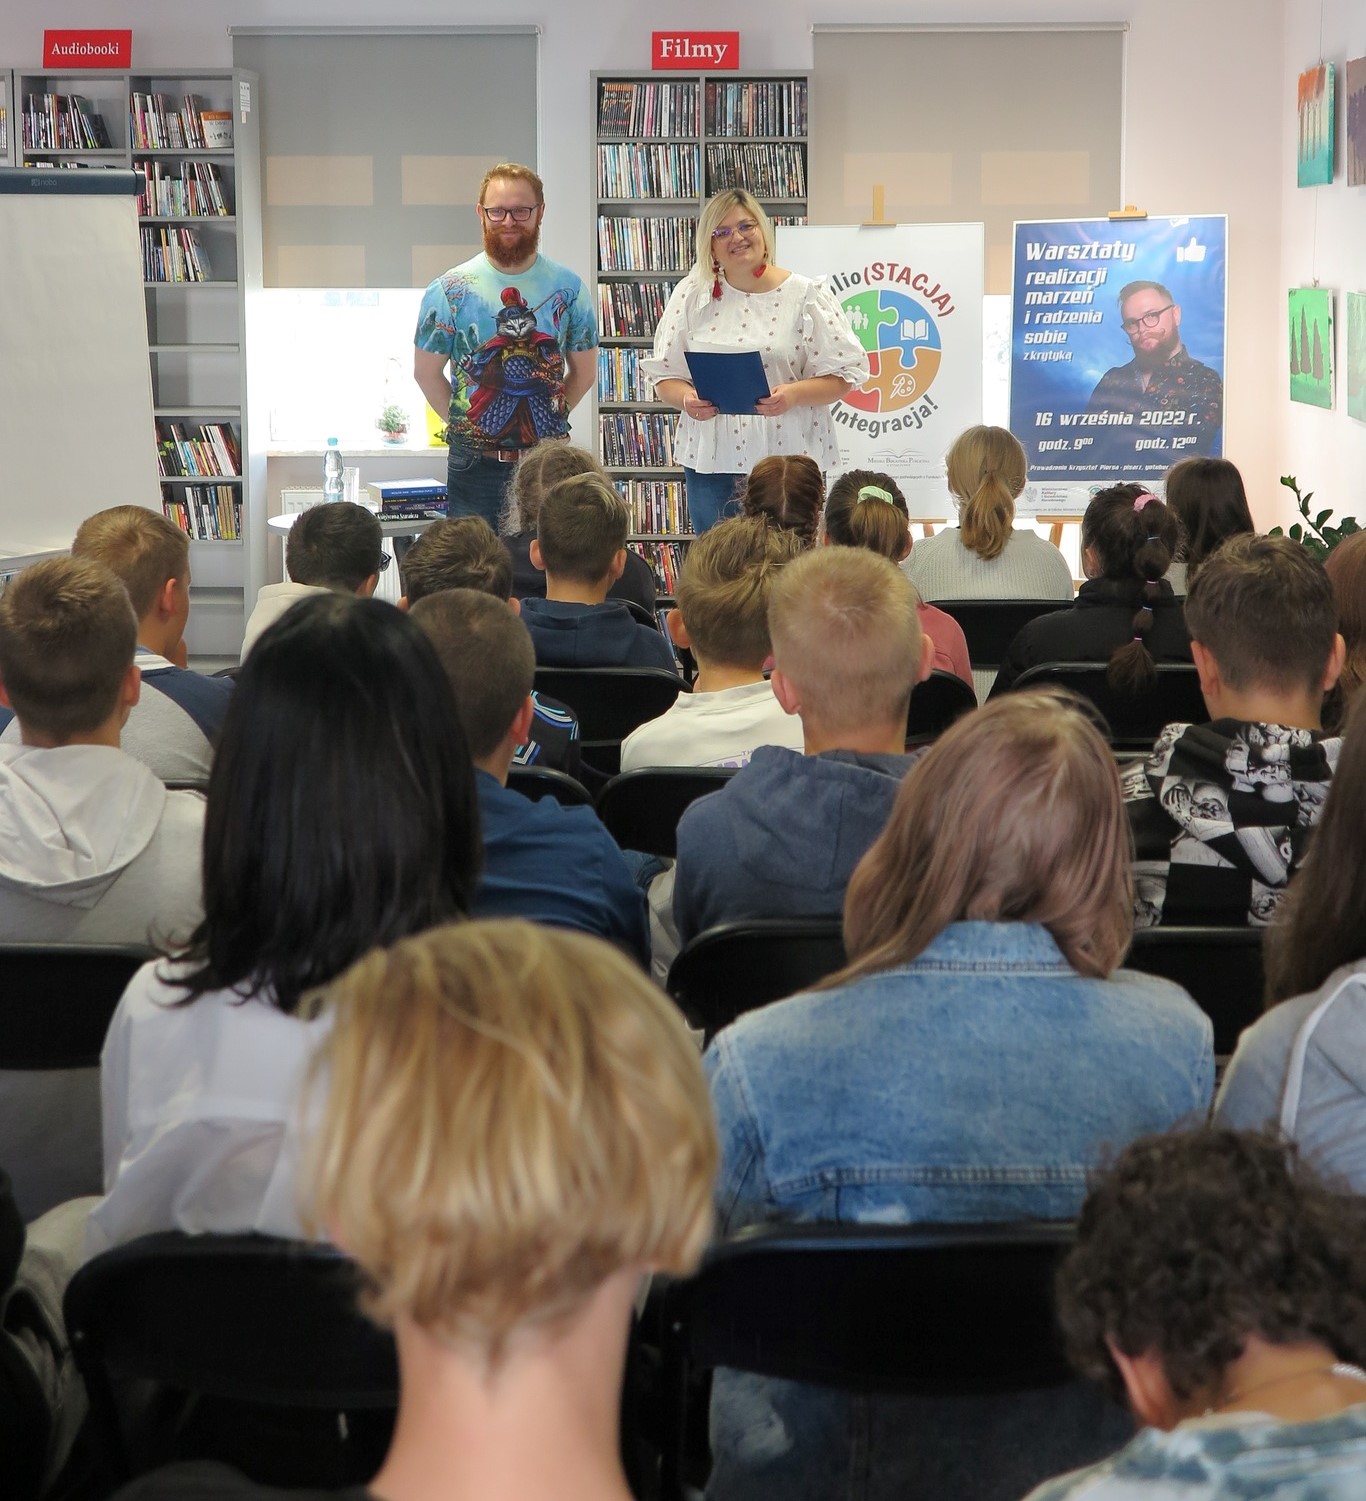 Krzysztof Piersa i bibliotekarka stoją przed publicznością, za nim po lewej stoi flipchart a po prawej na sztaludze dwa plakaty, logo Biblio(STACJA) - Integracja! i warsztaty realizacji marzeń i radzenia sobie z krytyką